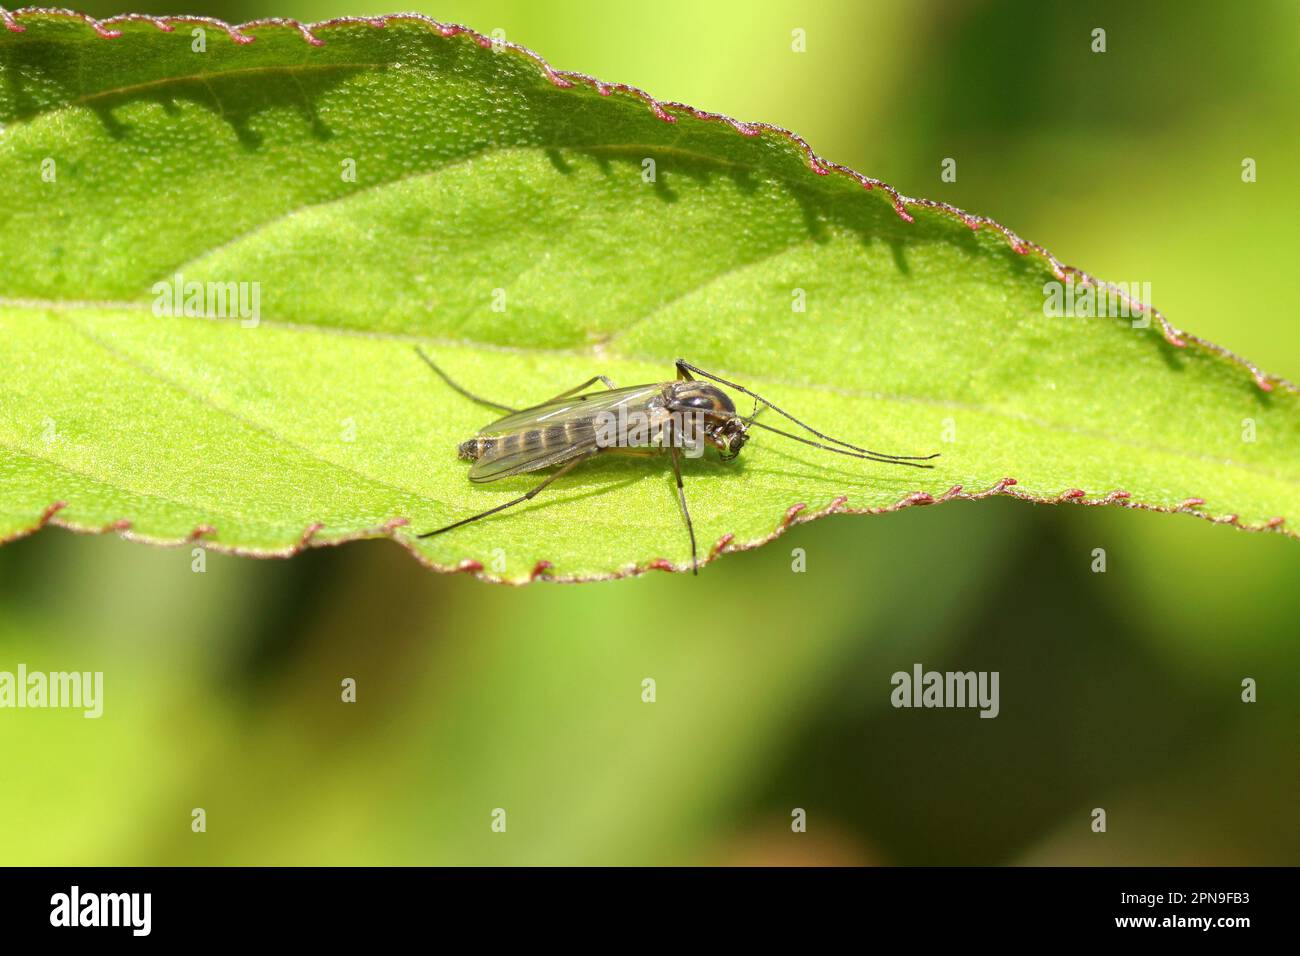 Closeup piccolo, chironomide femminile, ostetrica non mordente, famiglia Chironomidae che riposa su una foglia. Primavera, giardino olandese, aprile, Paesi Bassi. Foto Stock